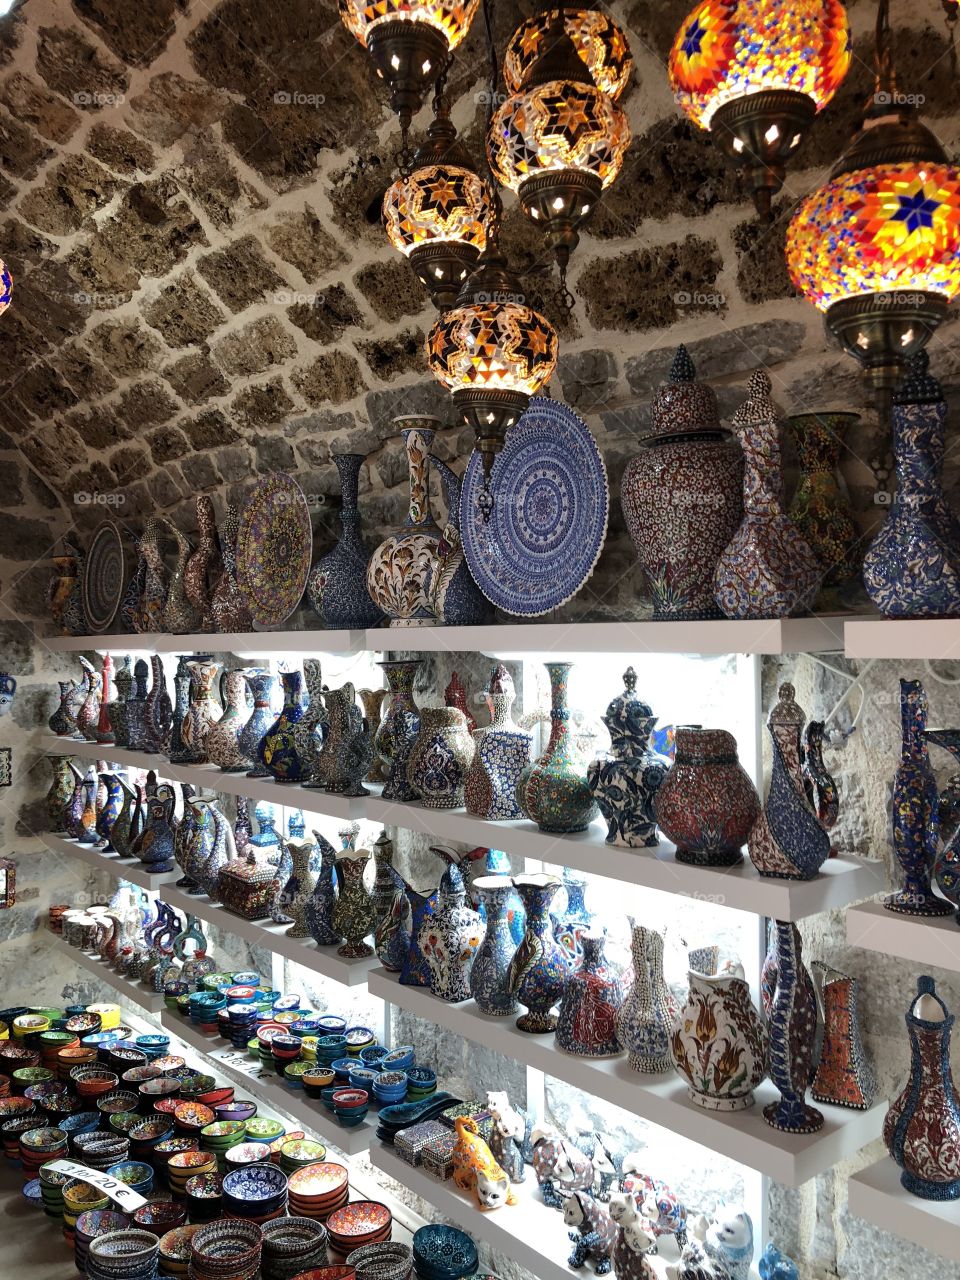 Shop in Kotor, Montenegro 